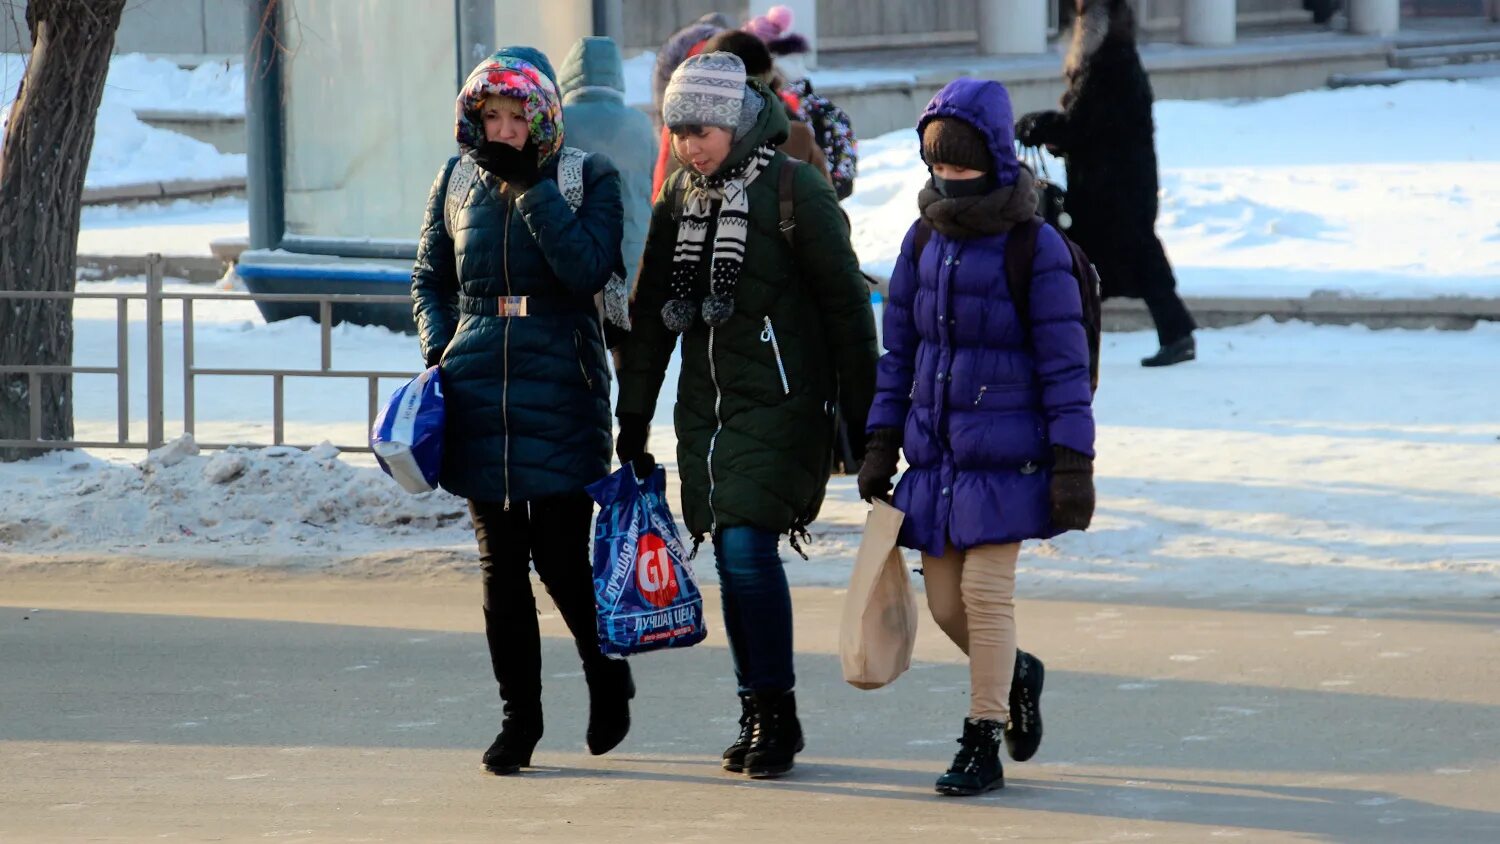 Сегодня на улице сильный мороз. Люди в зимней одежде. Люди одетые по погоде. Одеться не по погоде. Одежда в Мороз.